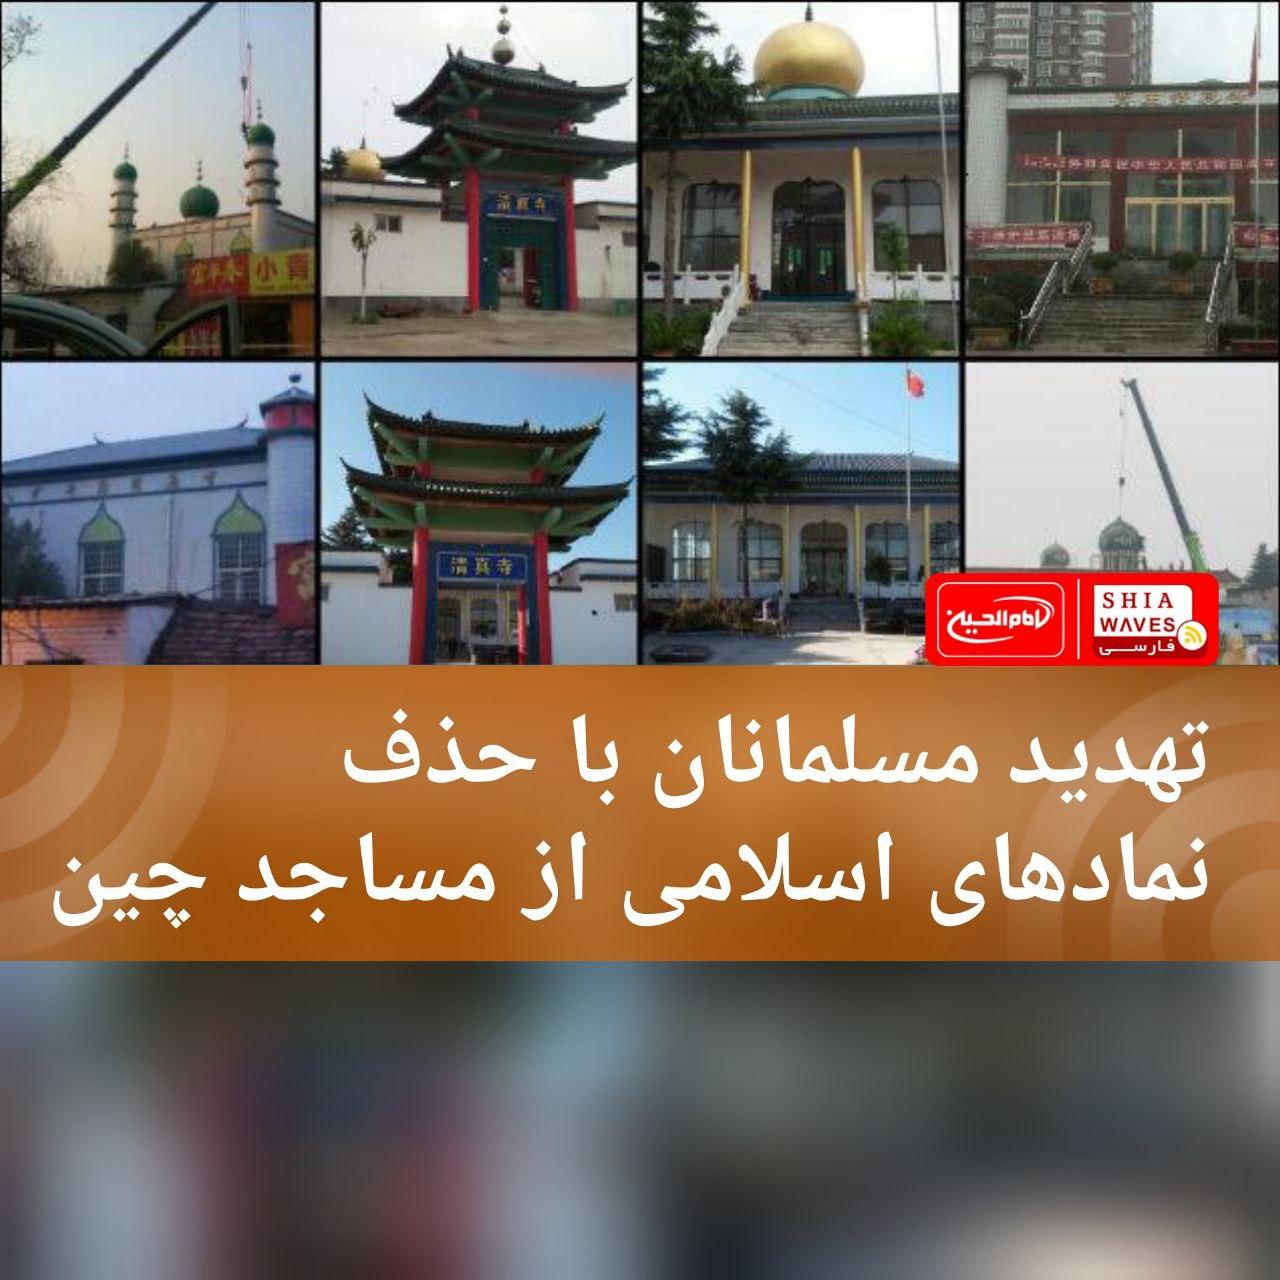 تصویر تهدید مسلمانان با حذف نمادهای اسلامی از مساجد چین